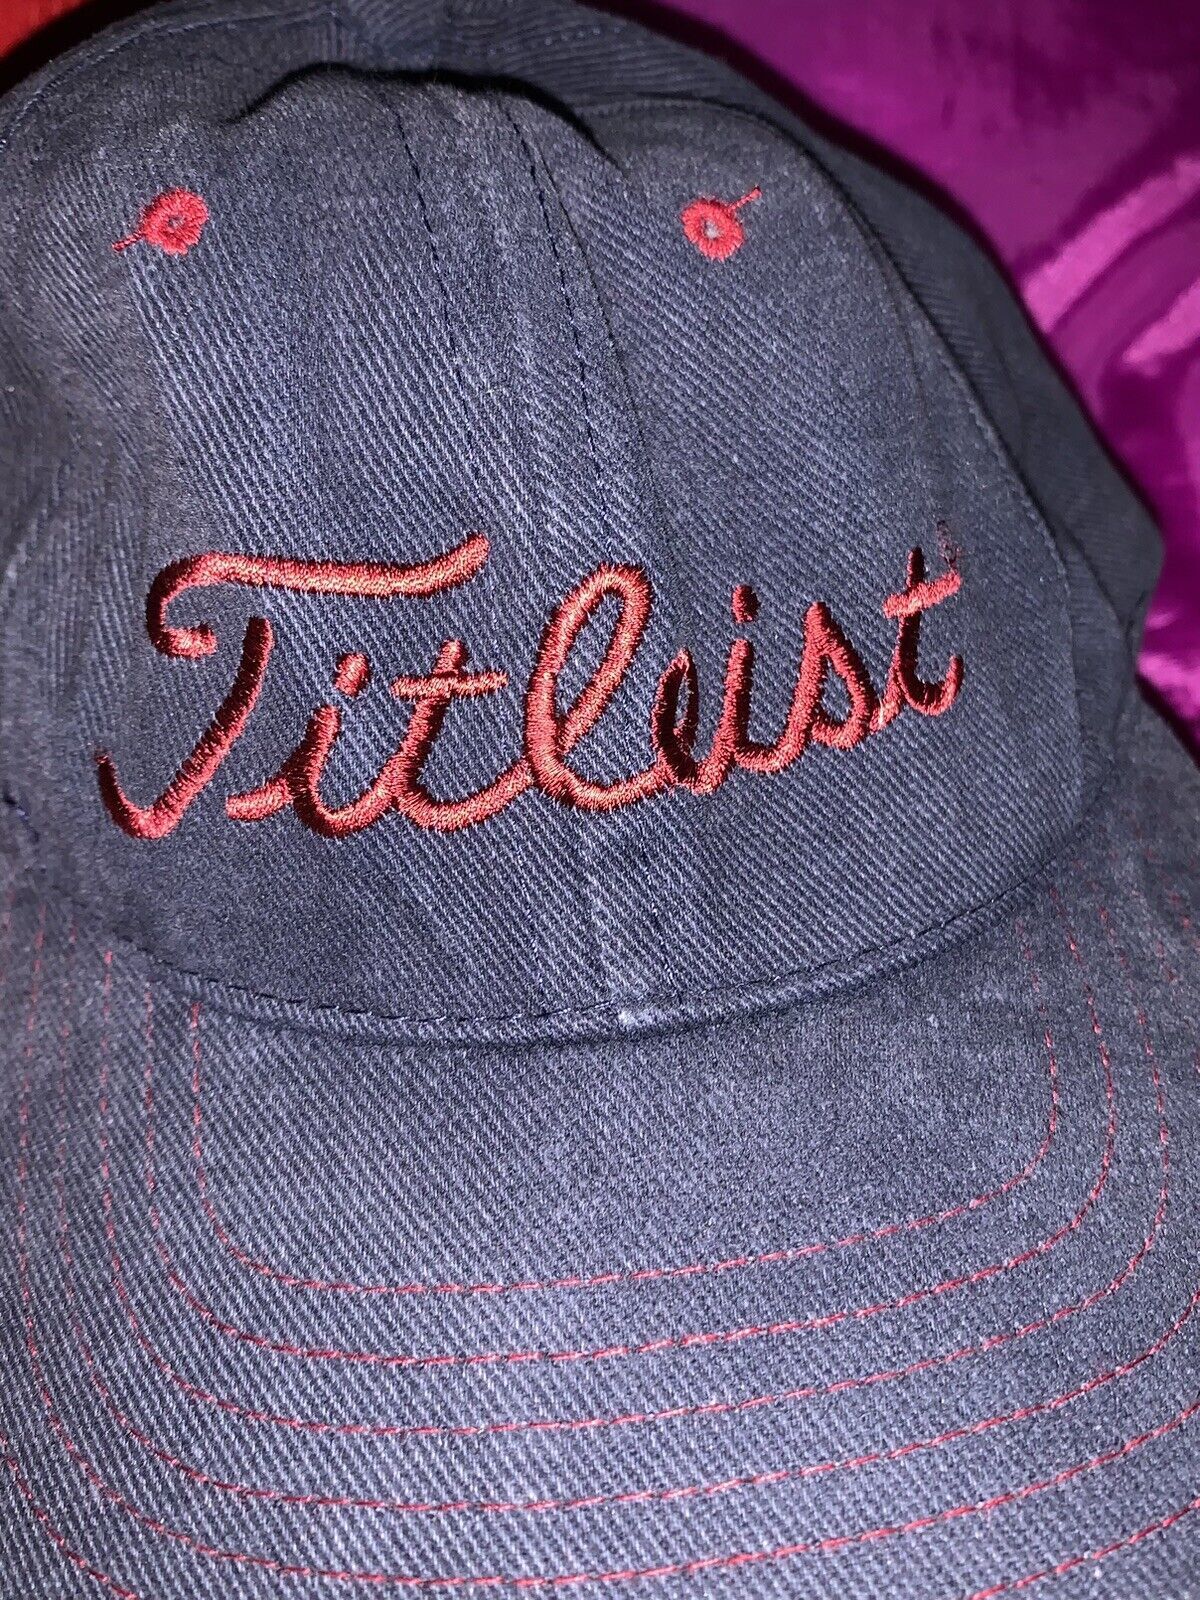 Primary image for Titleist Golf Hat Blue Red Lettering Adjustable Strapback Cap Soft Hat